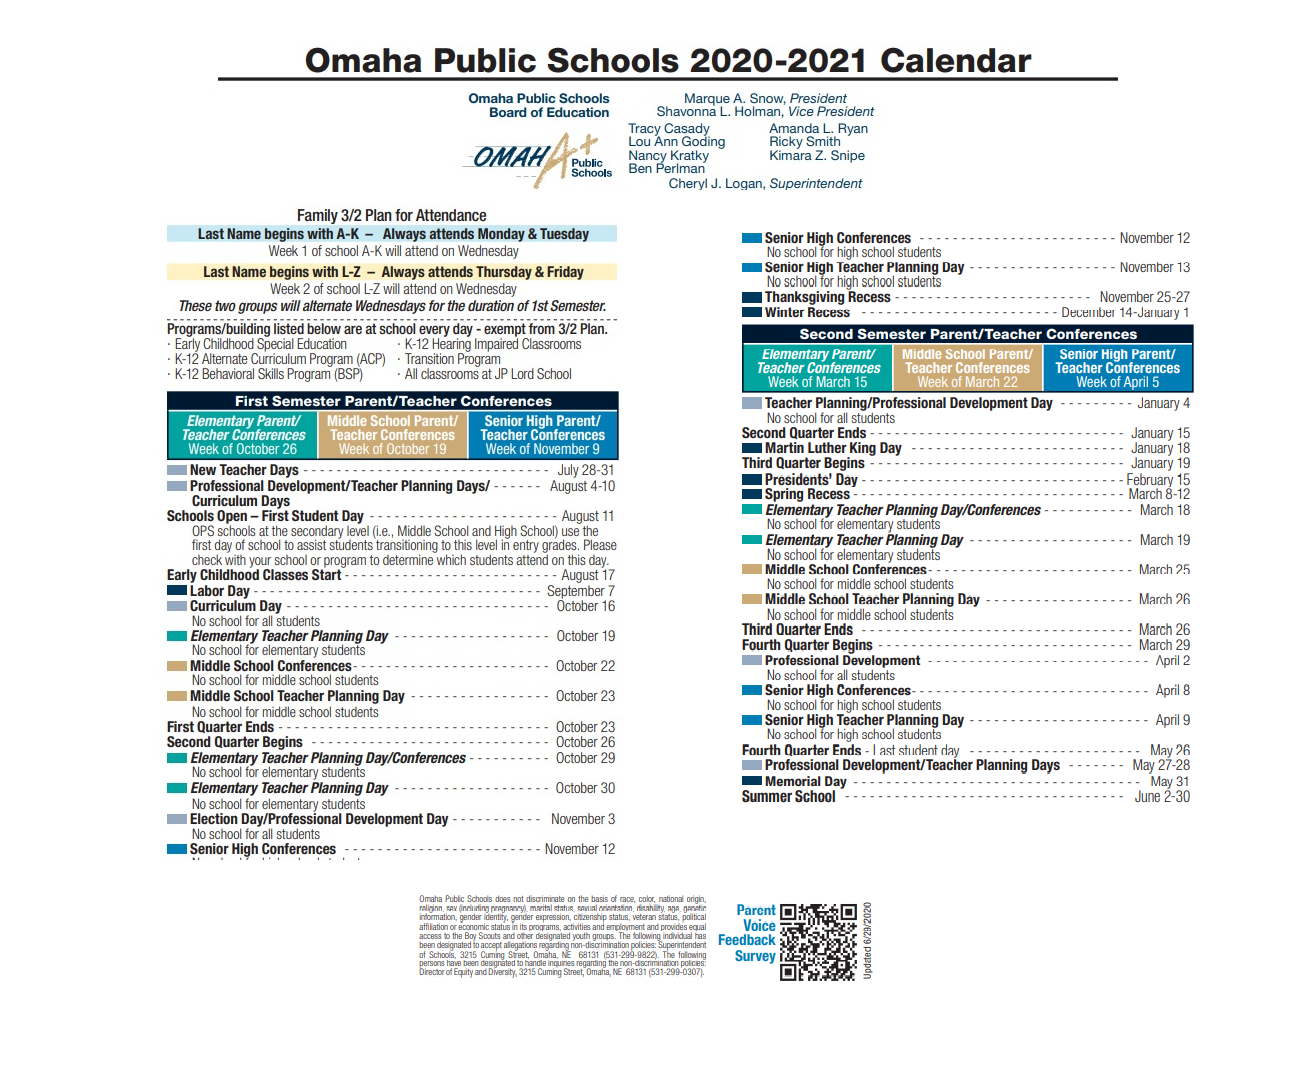 District School Academic Calendar Key for Early Chldhd/la Fern Williams